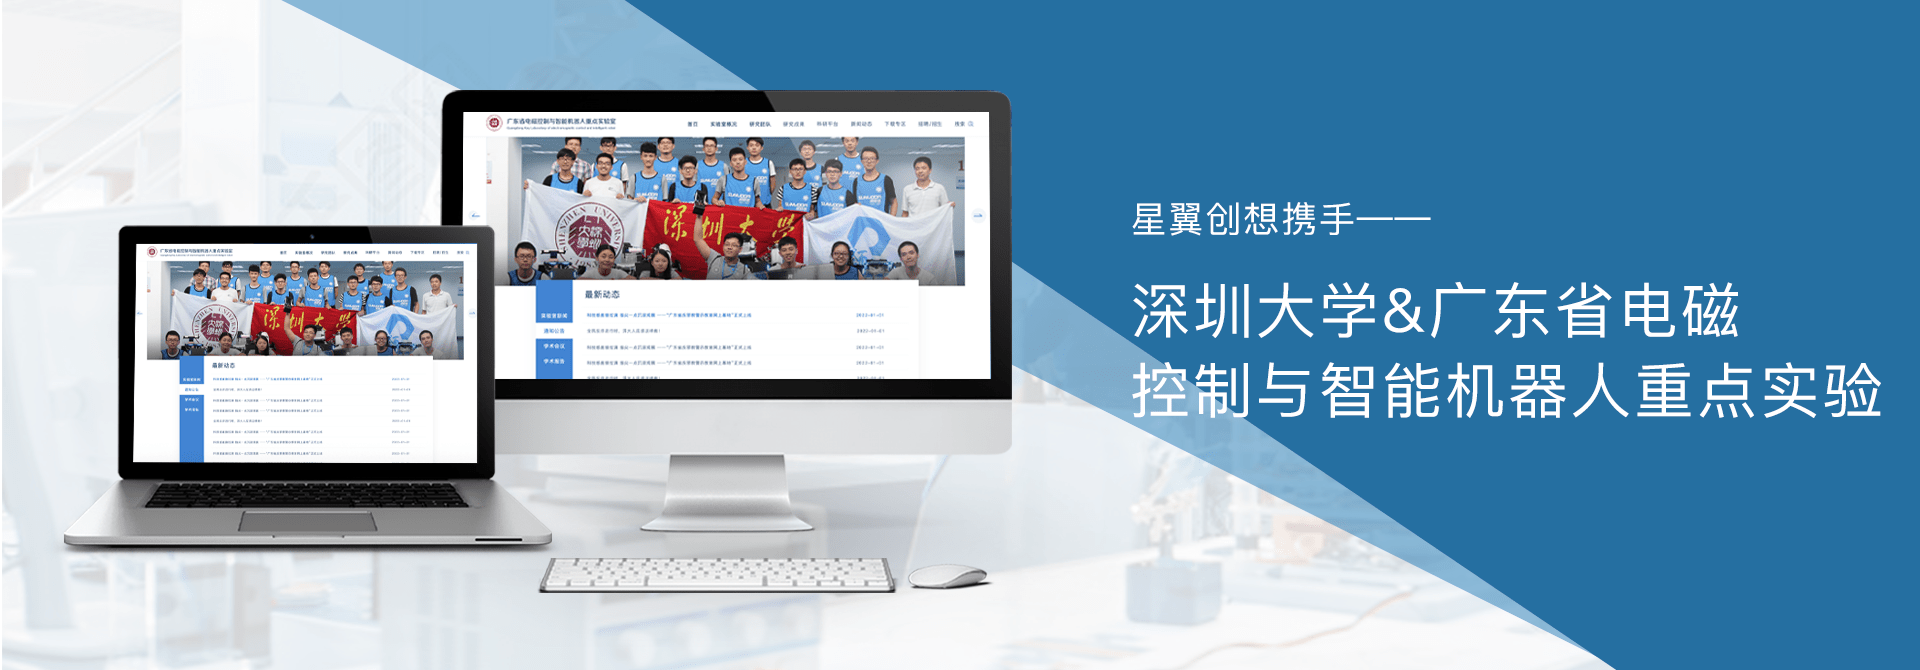 深圳大学实验室网站设计开发